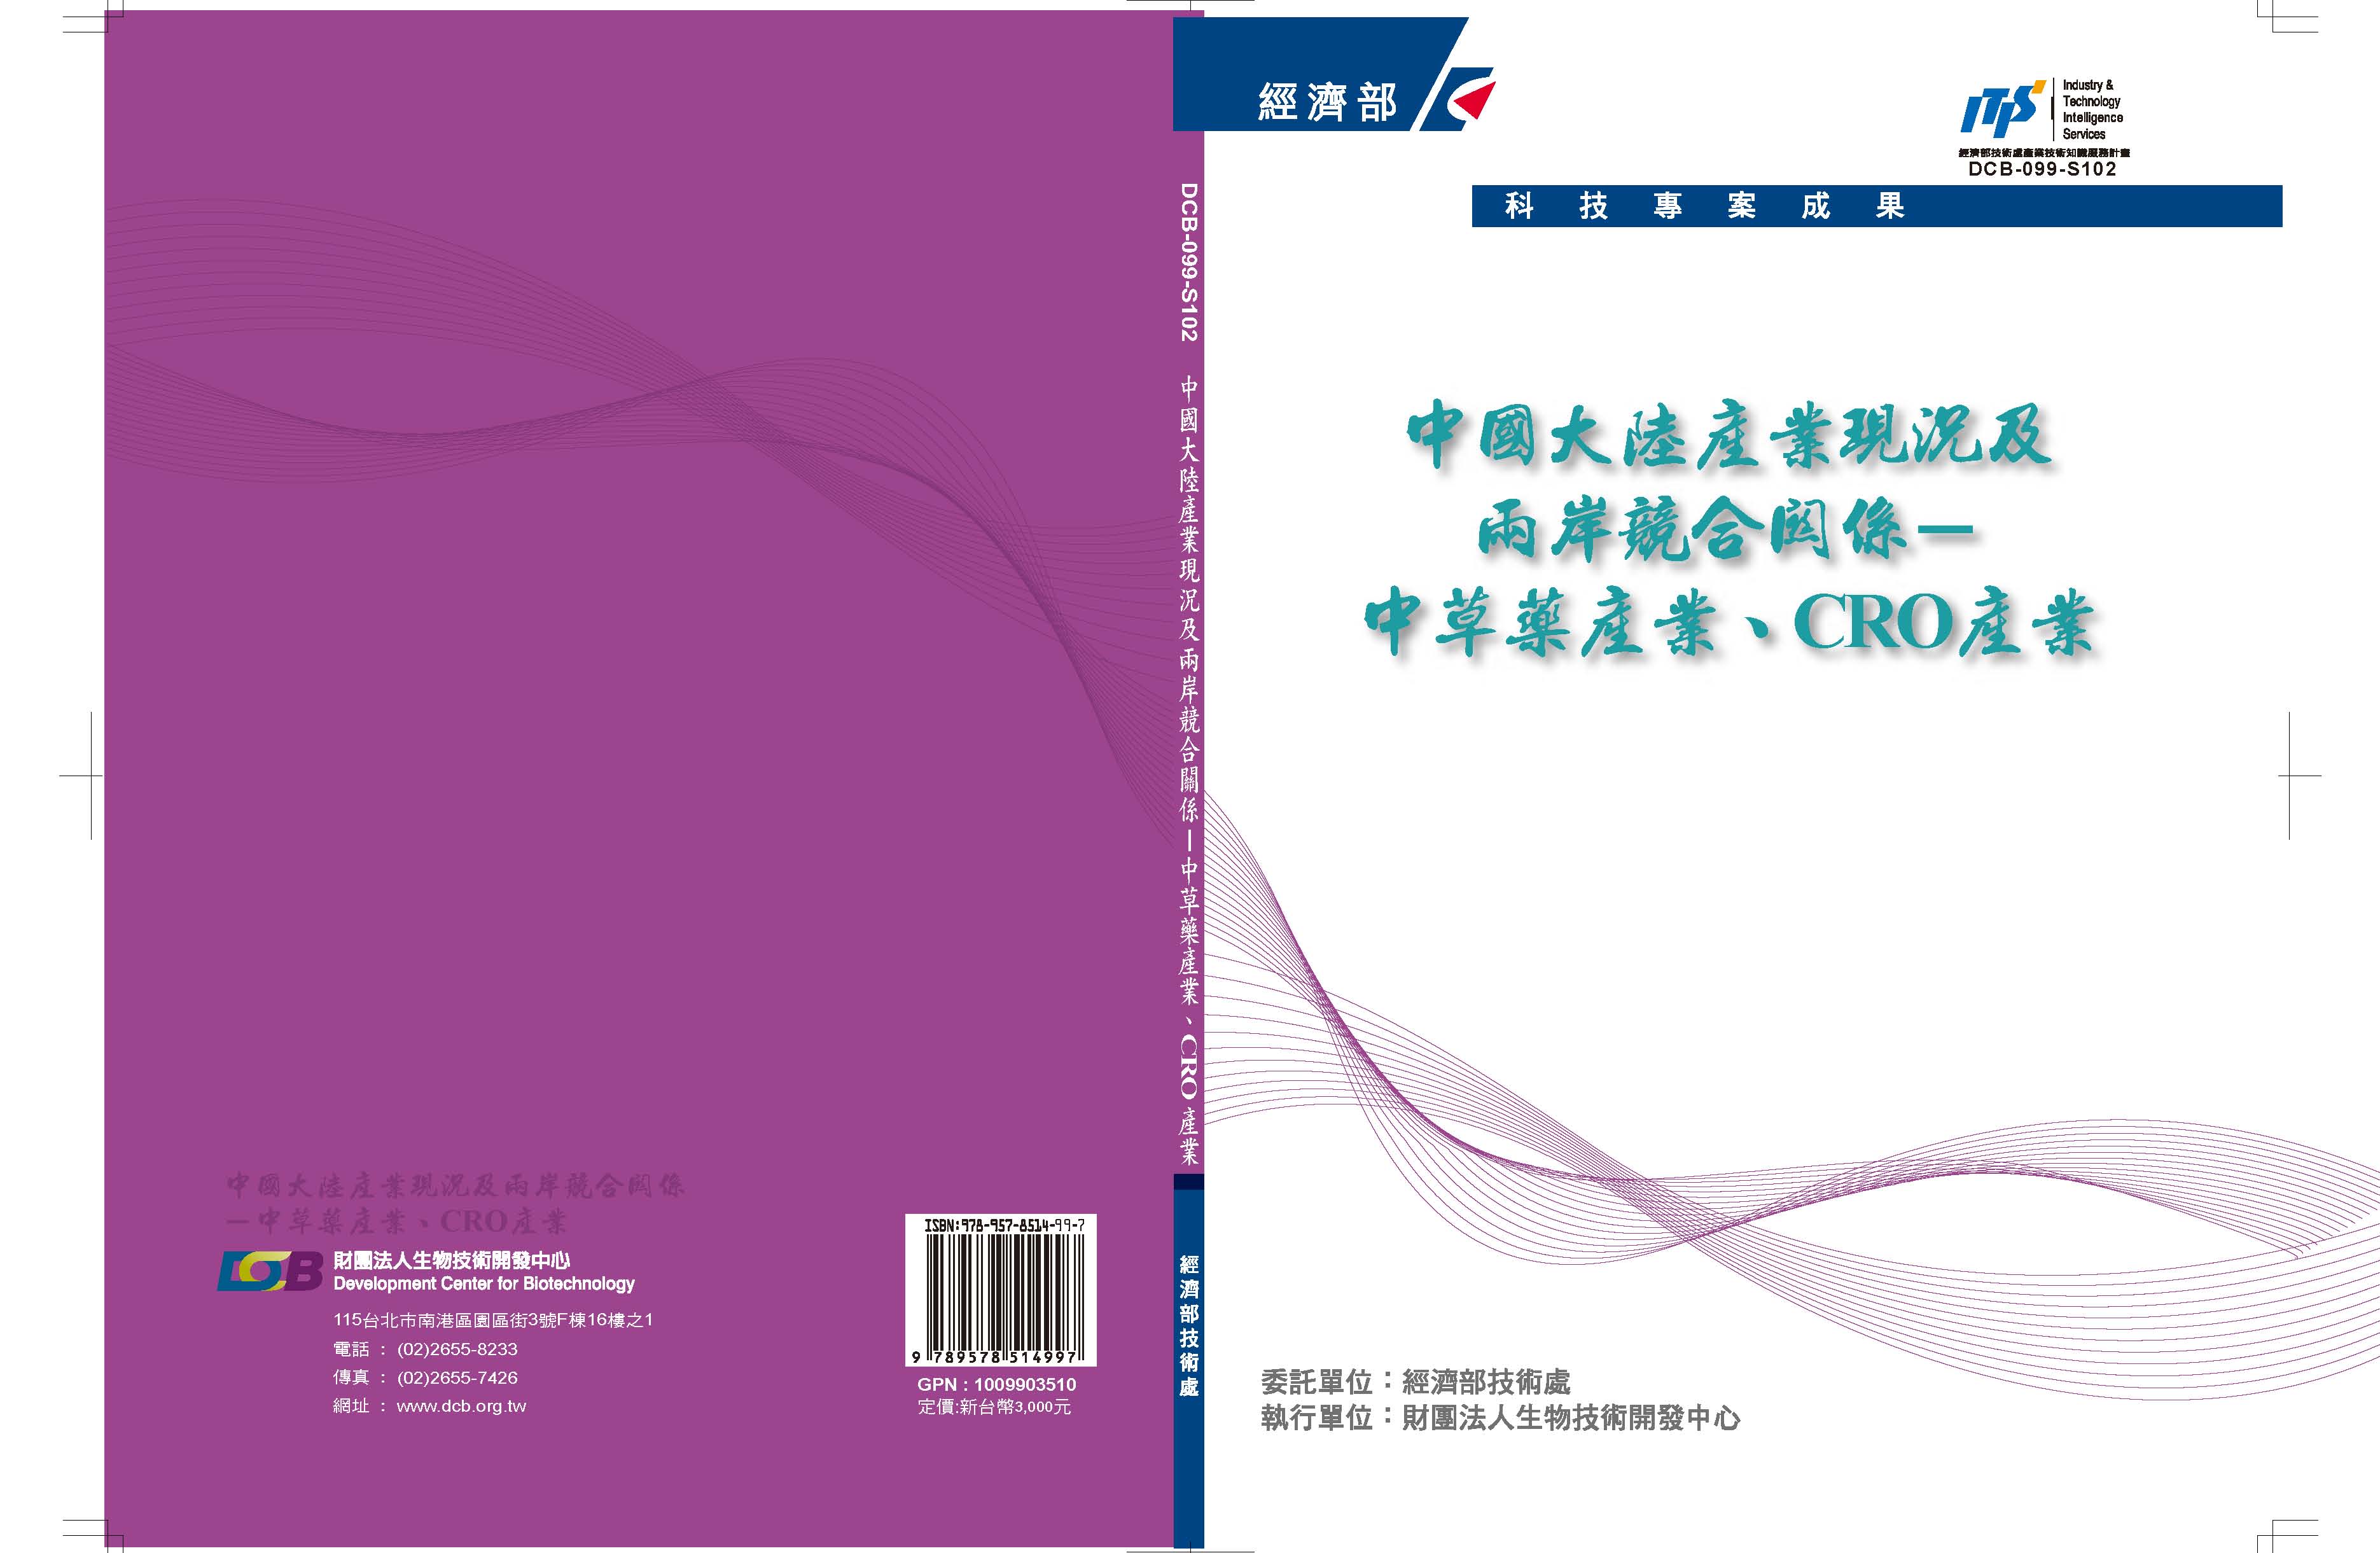 中國大陸產業現況及兩岸競合關係－中草藥產業、CRO產業